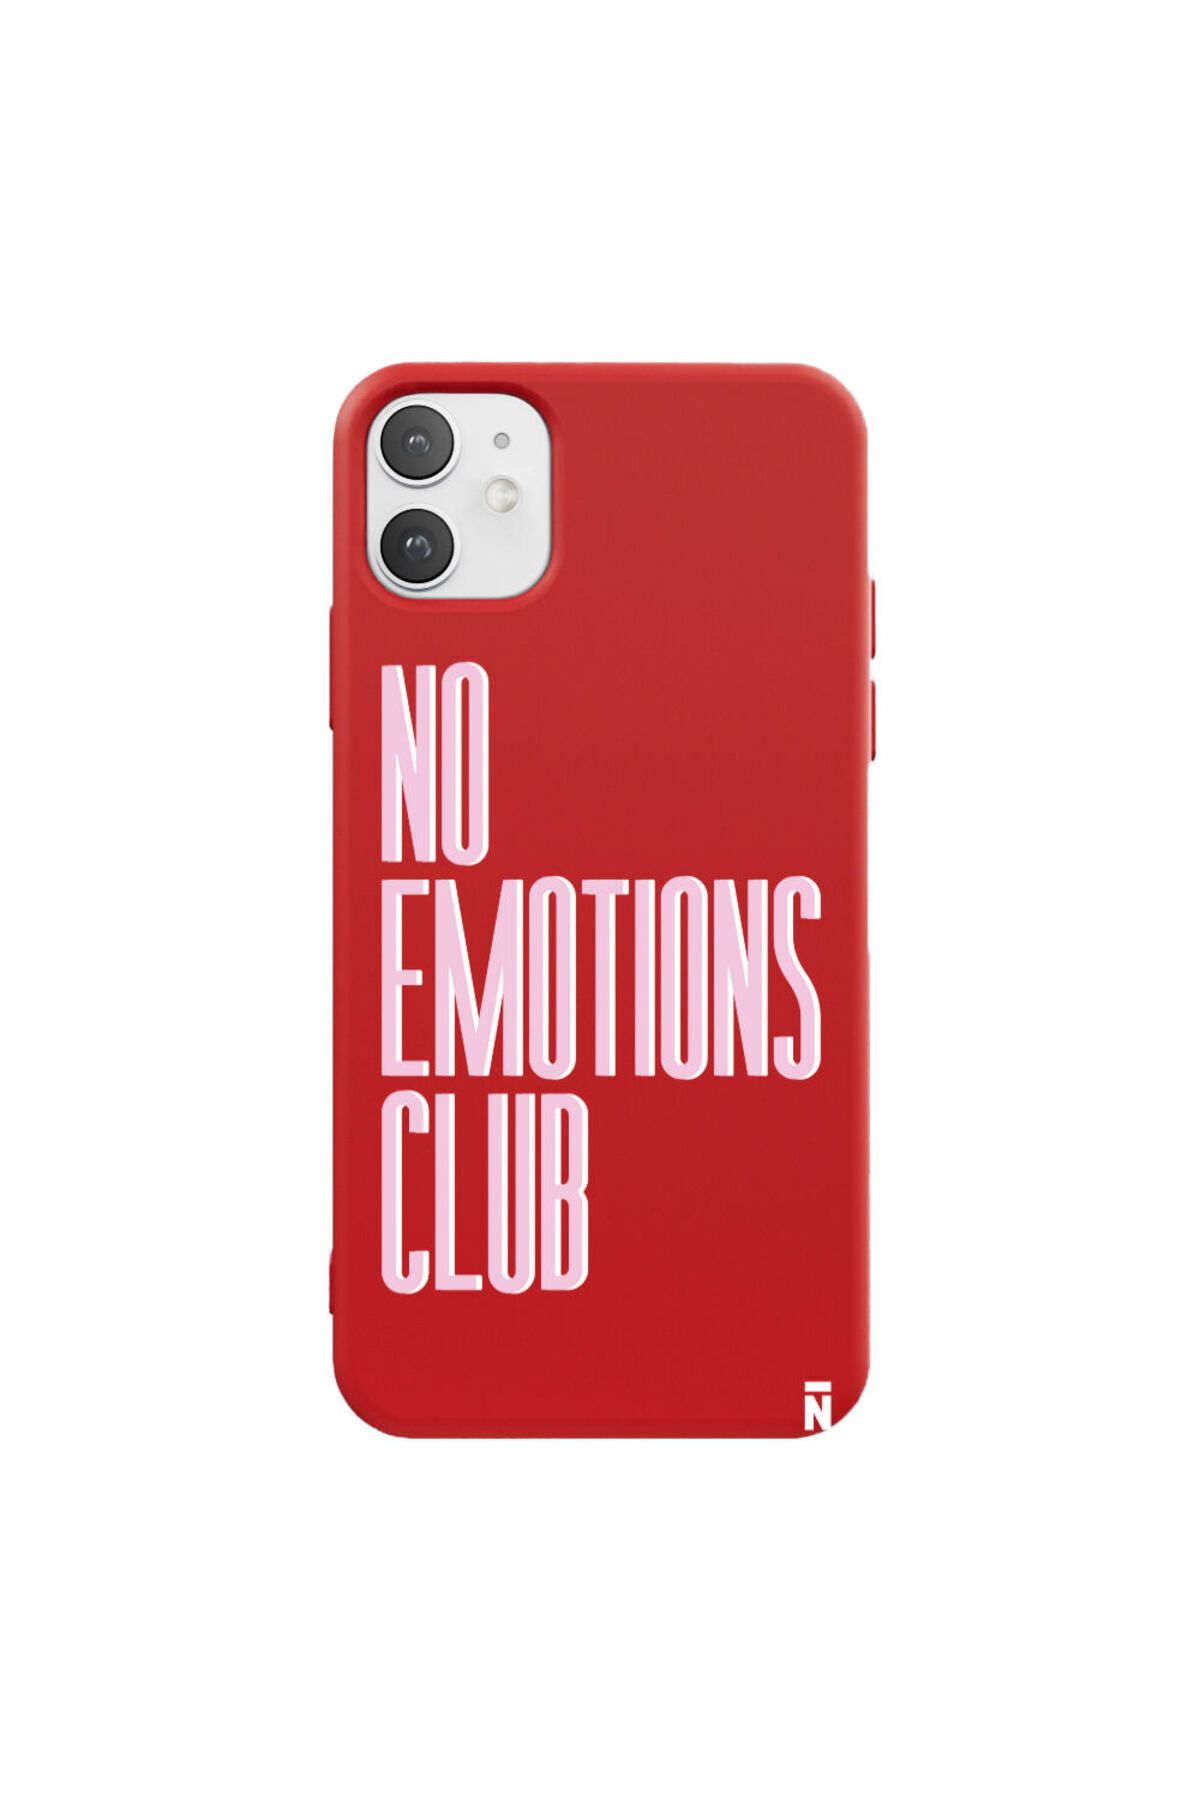 Casen iPhone 11 Silikon Özel Tasarım Yazılı Duygusuz No Emotions Club Kırmızı Renkli Telefon Kılıfı